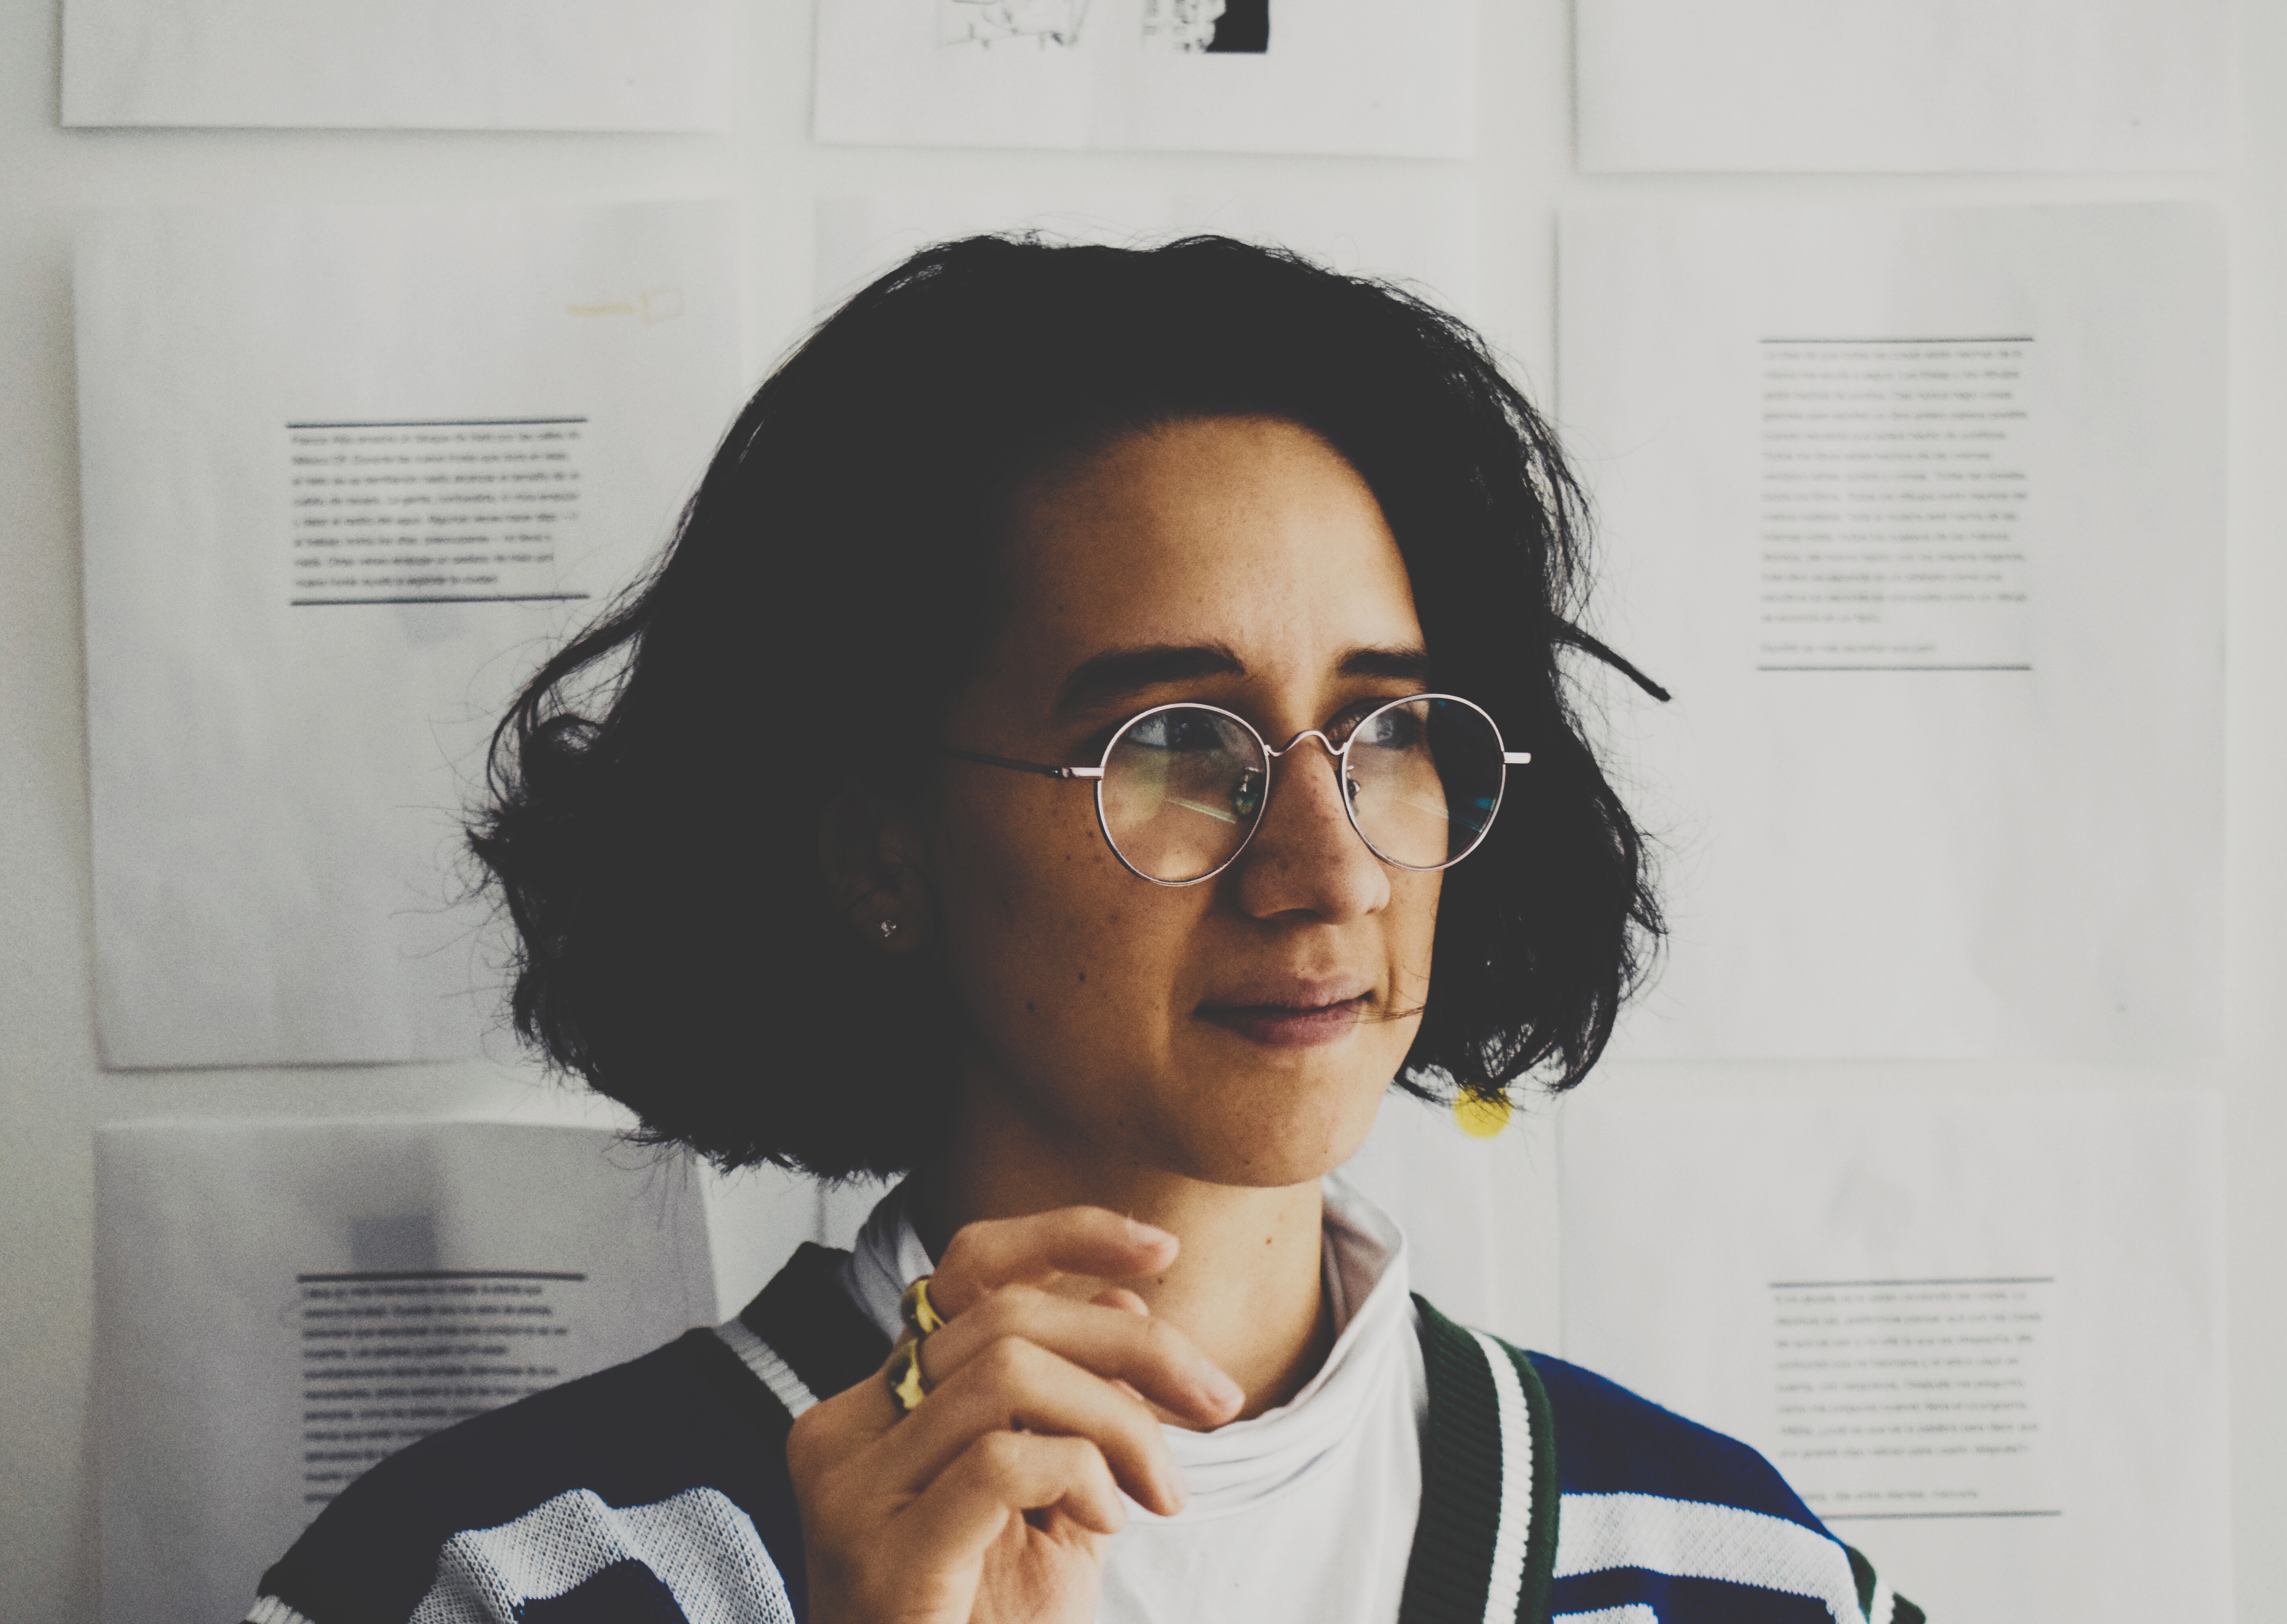 La diseñadora Juliana Castro Varón es la autora del libro "Papel Sensible", publicado por Espasa (Foto: Santiago Díaz Benavides).